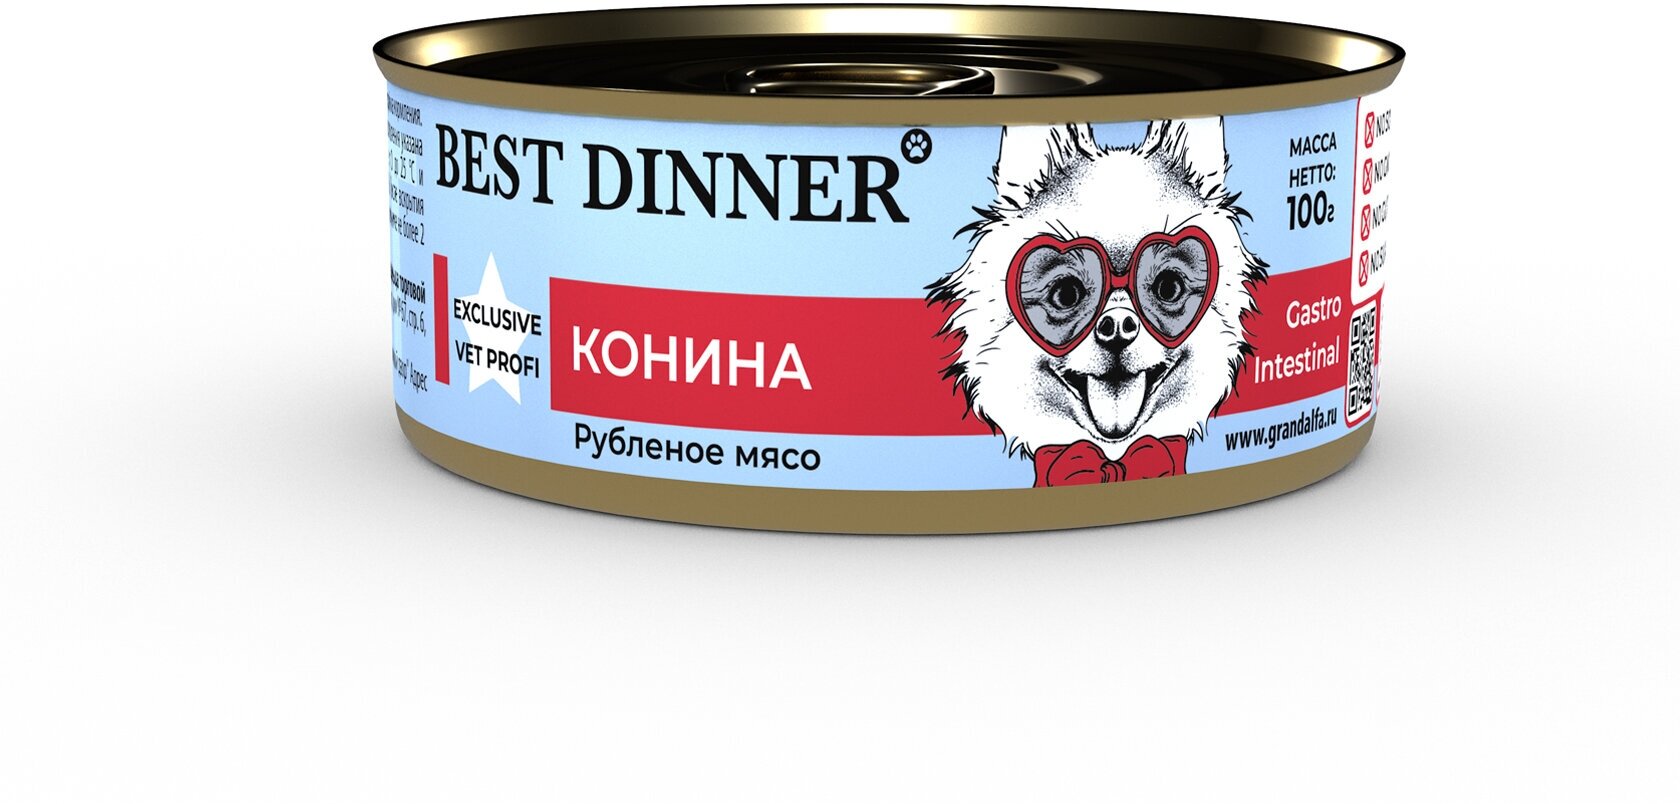 Best Dinner Exclusive Gastro Intestinal консервы для собак при проблемах пищеварения с кониной - 100 г х 24 шт